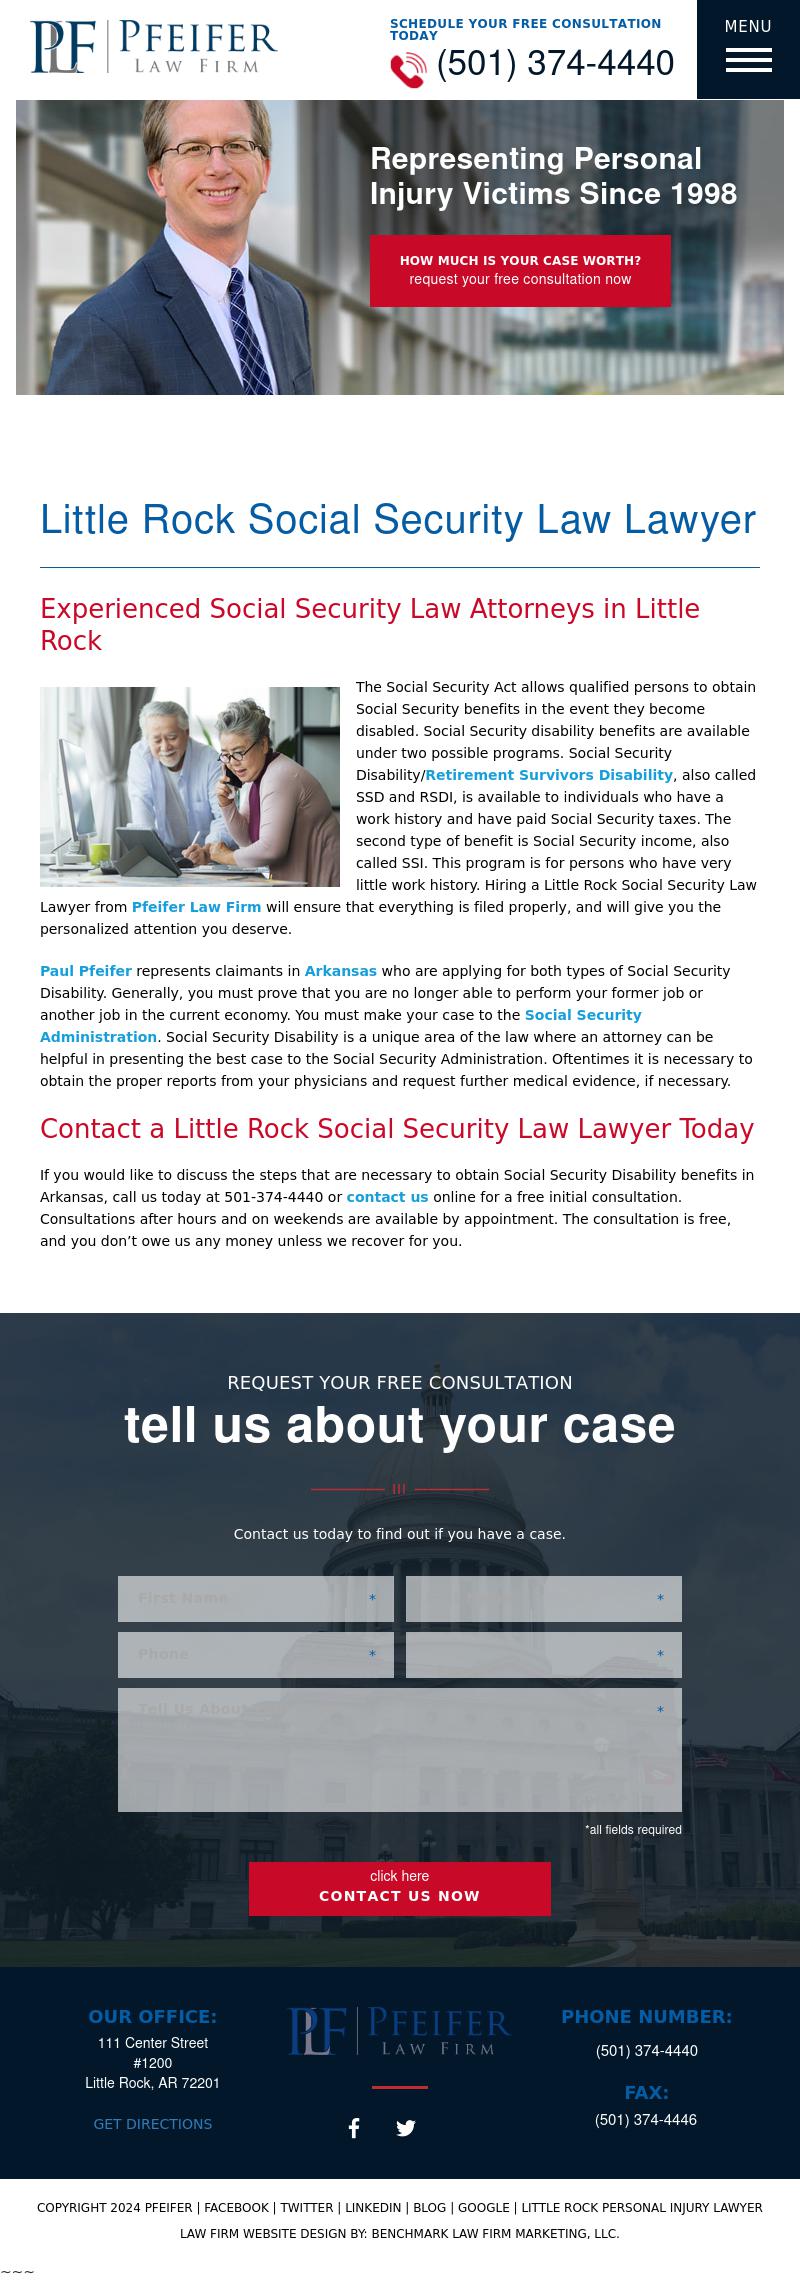 Pfeifer Law Firm - Little Rock AR Lawyers